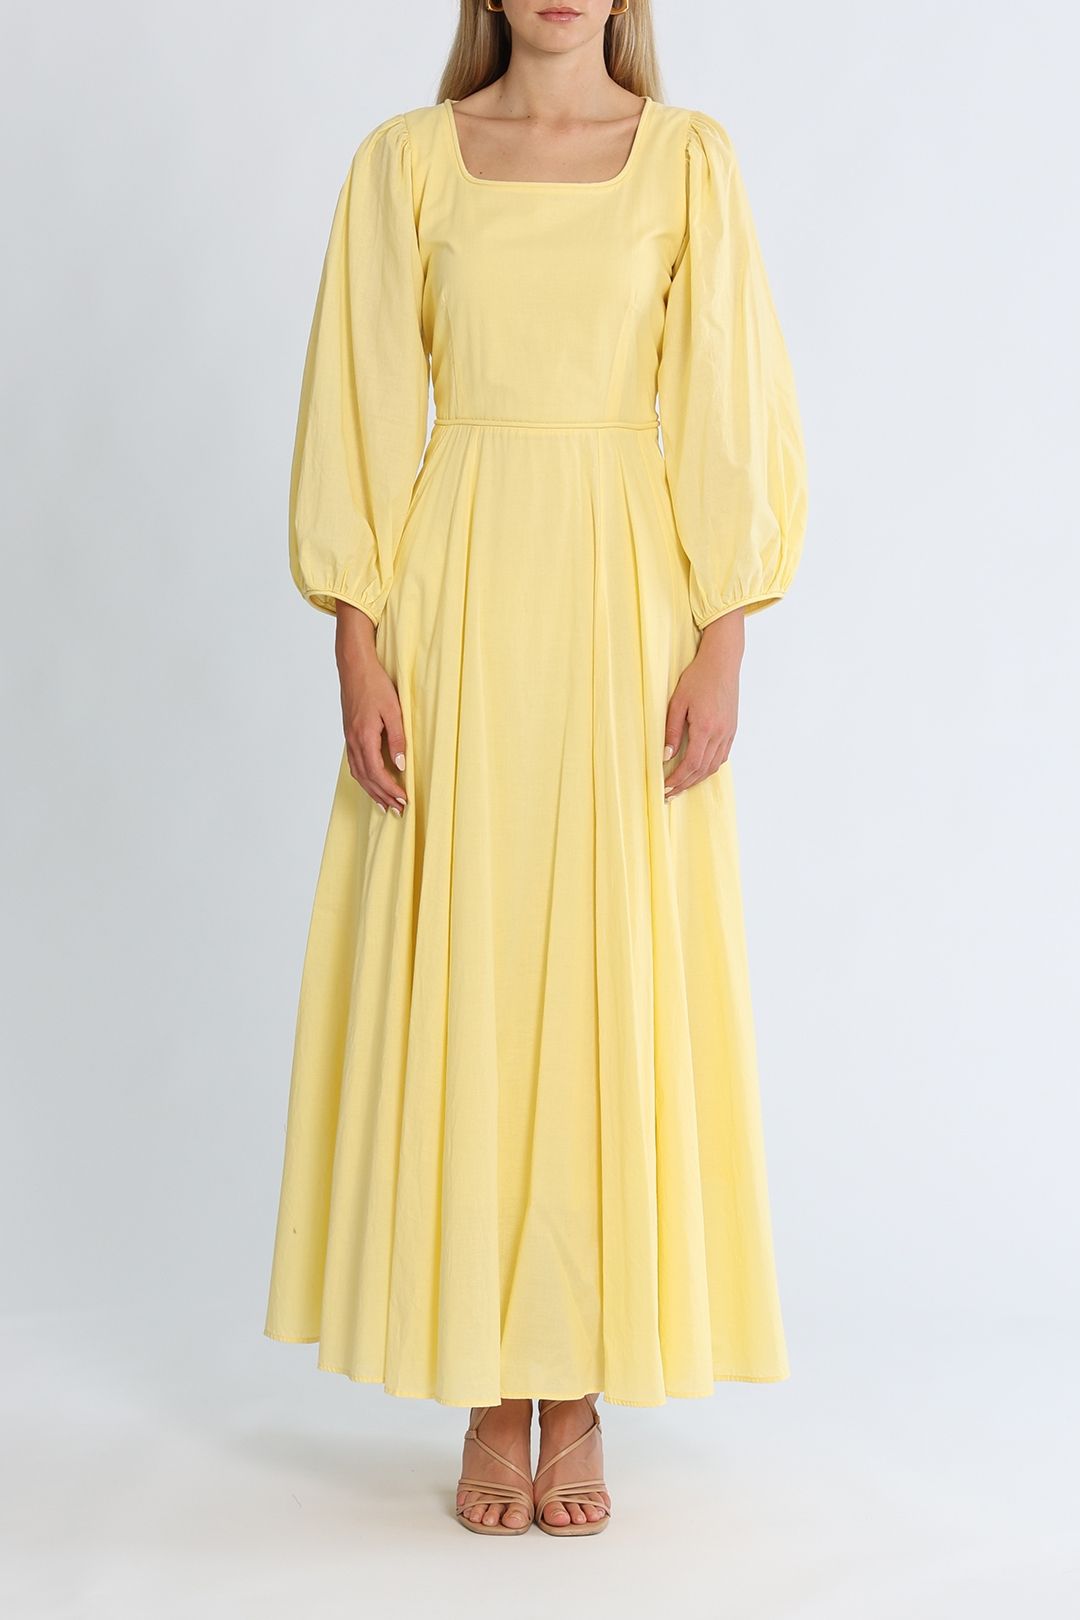 Morrison Emilia Long Sleeve Maxi Dress Lemon